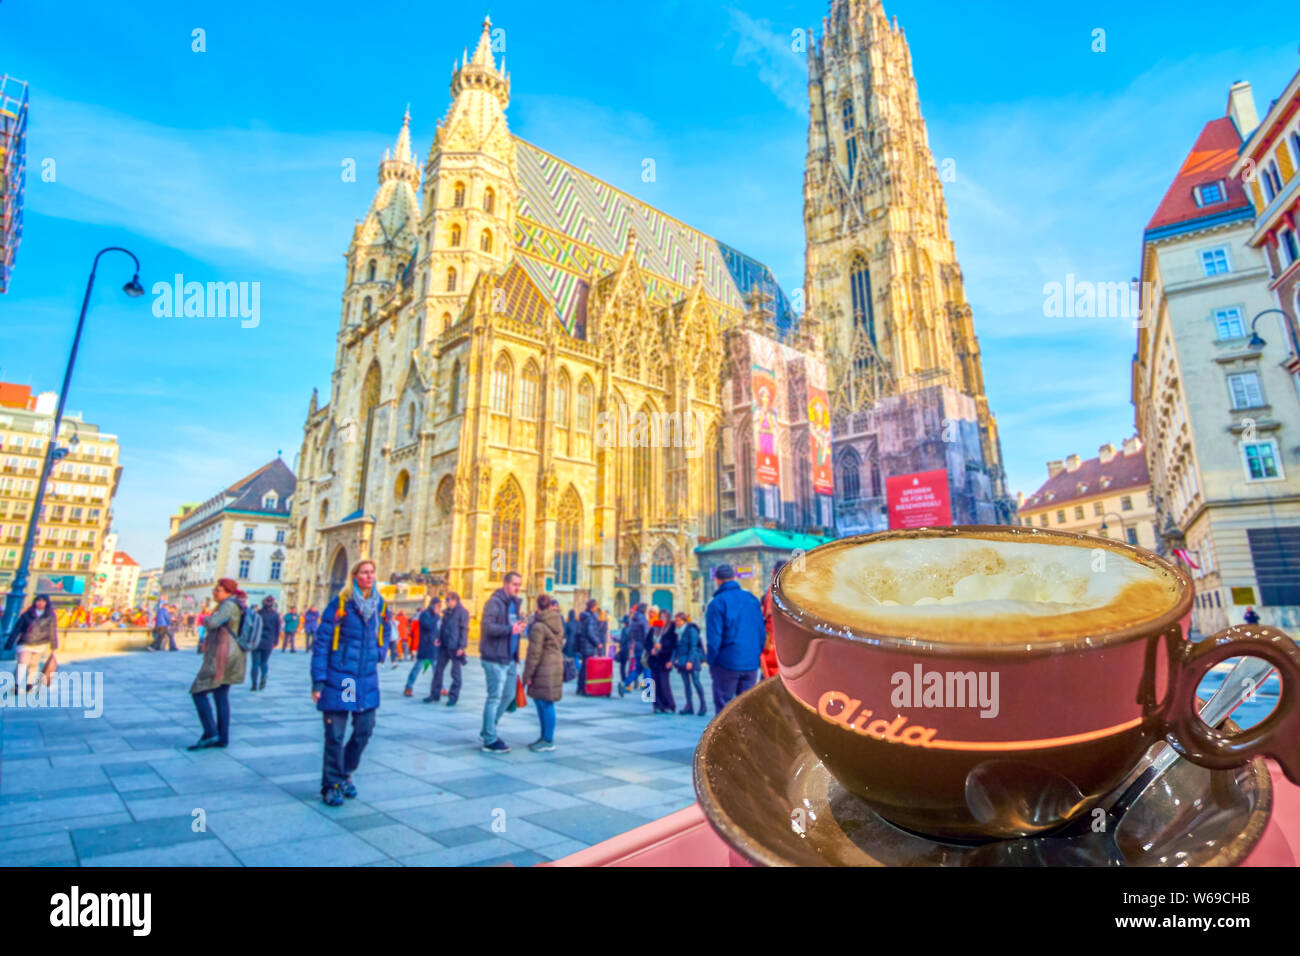 Vienne, Autriche - 18 février 2019 : Profitez de la tasse de café viennois en mélange avec une vue superbe sur l'Acra Stephansdom, le 18 février à Vienne. Banque D'Images